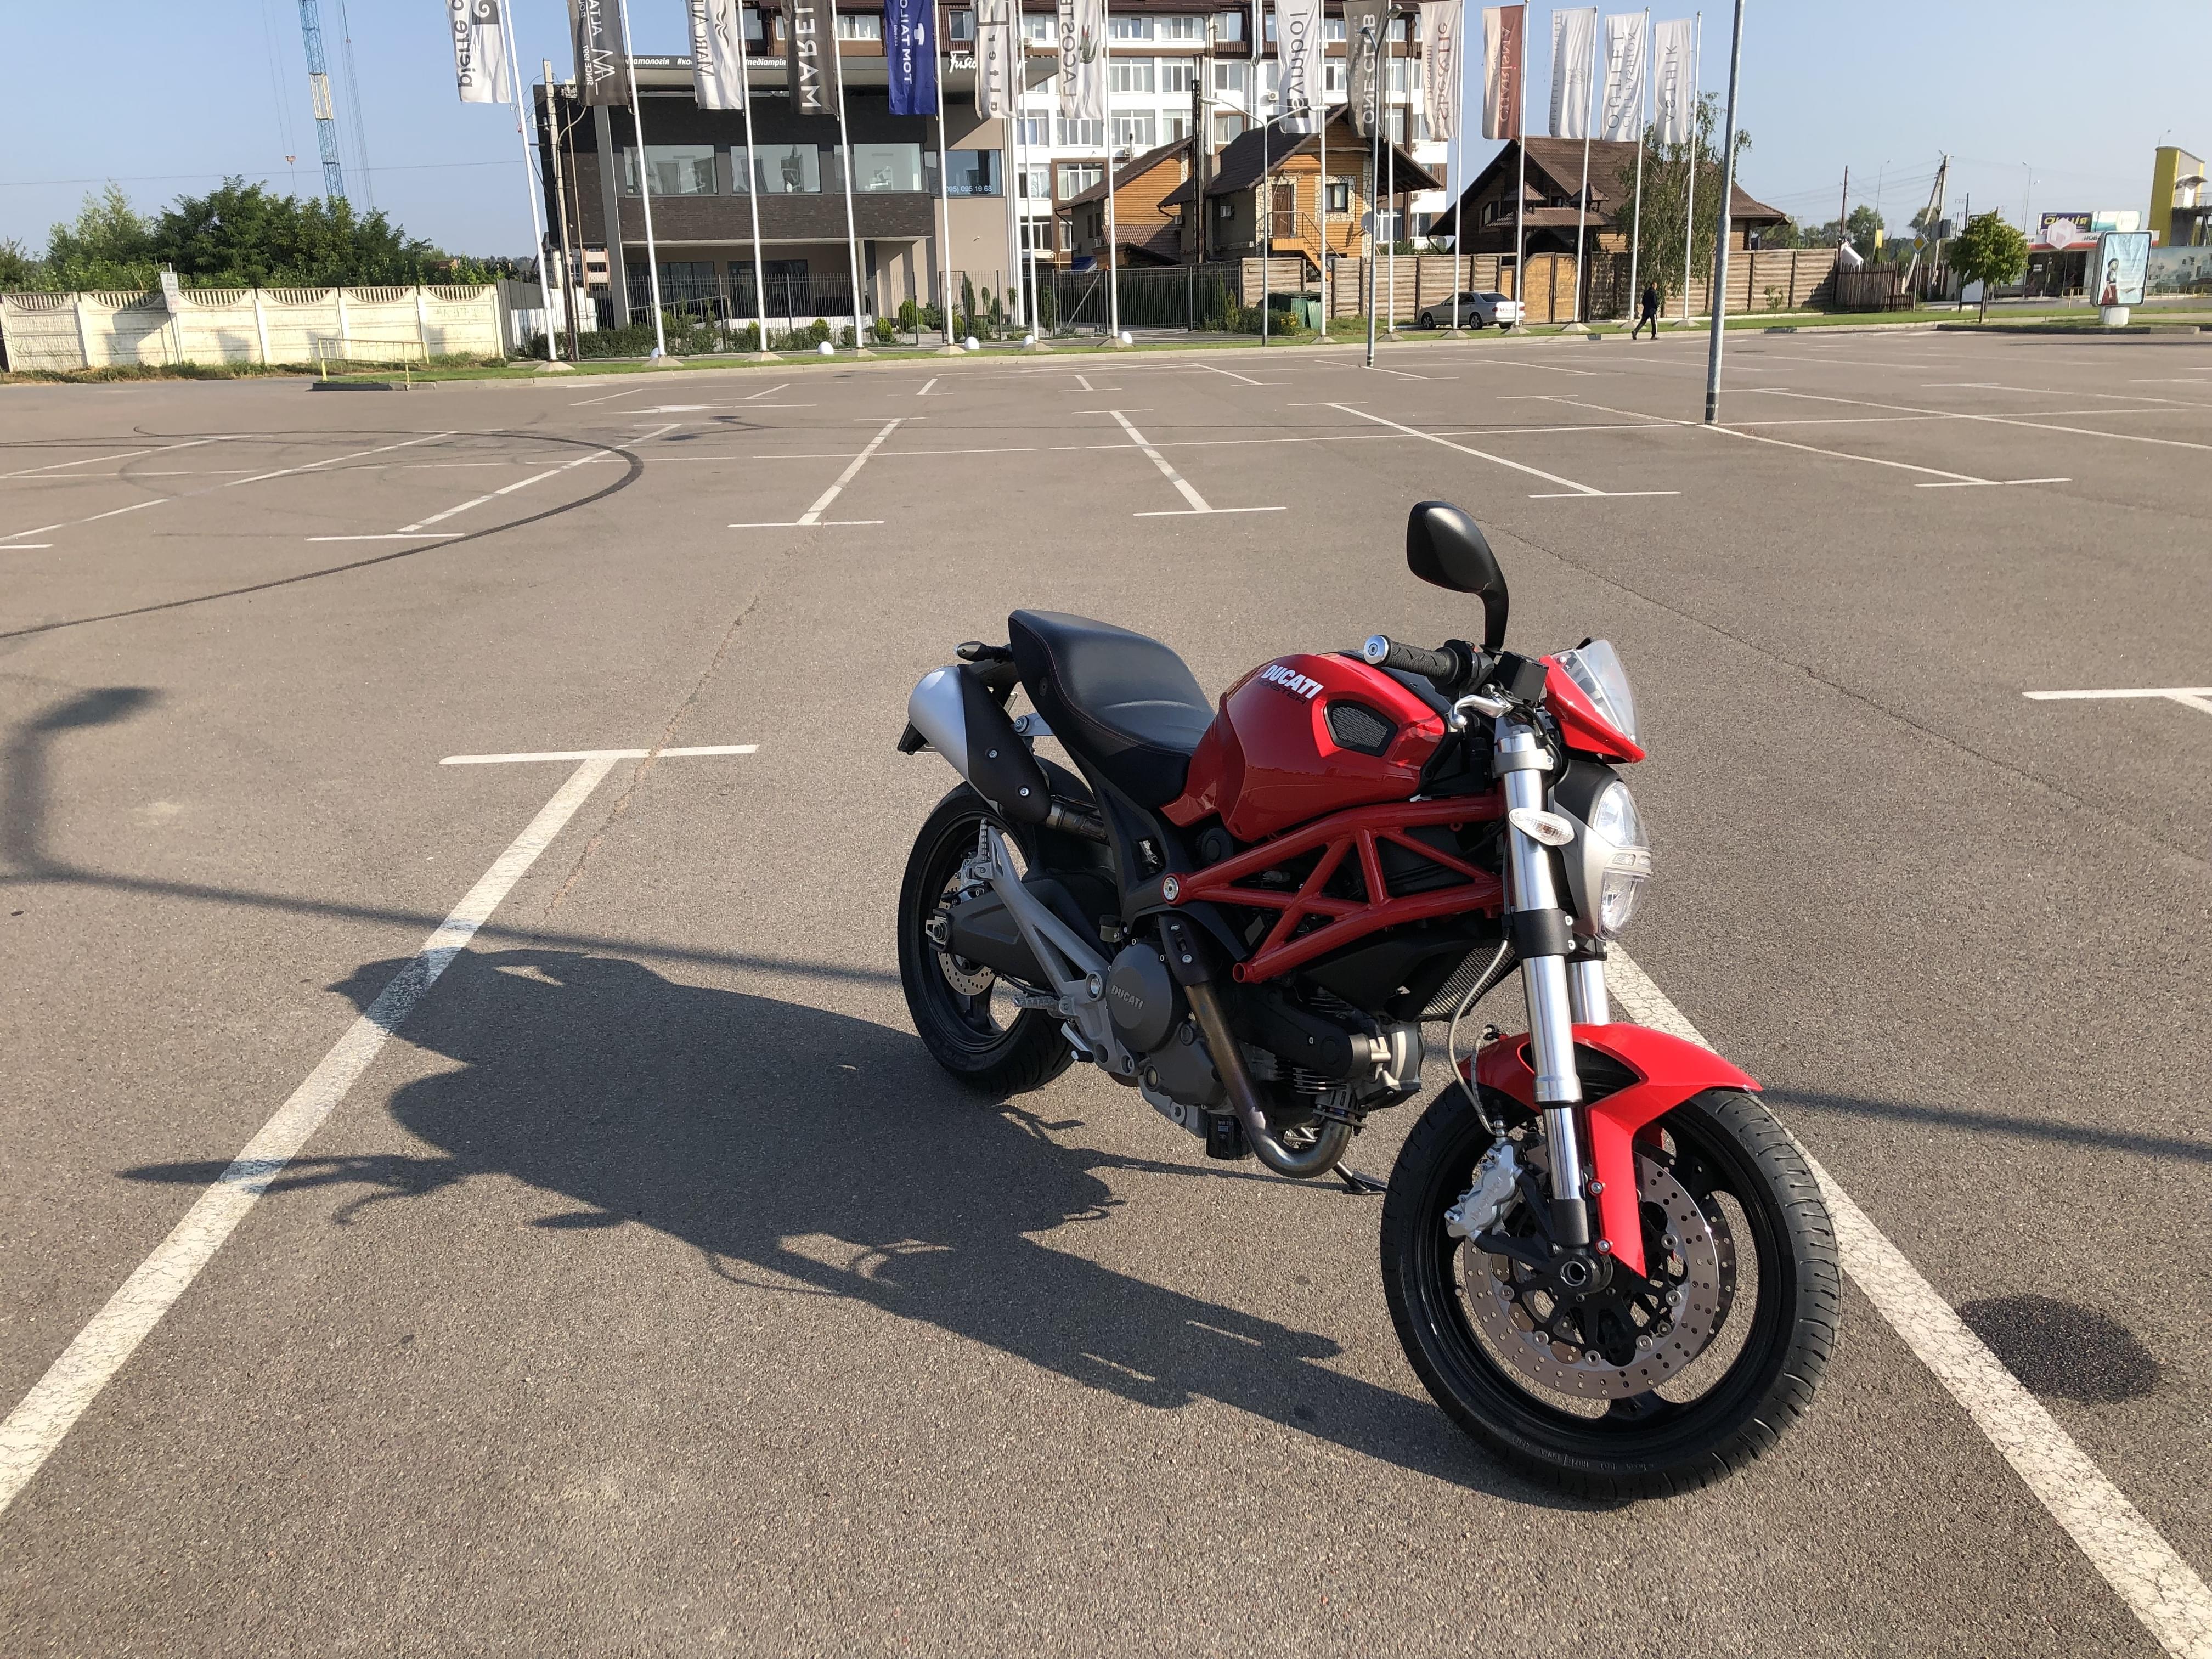 Ducati Monster 696 for rental